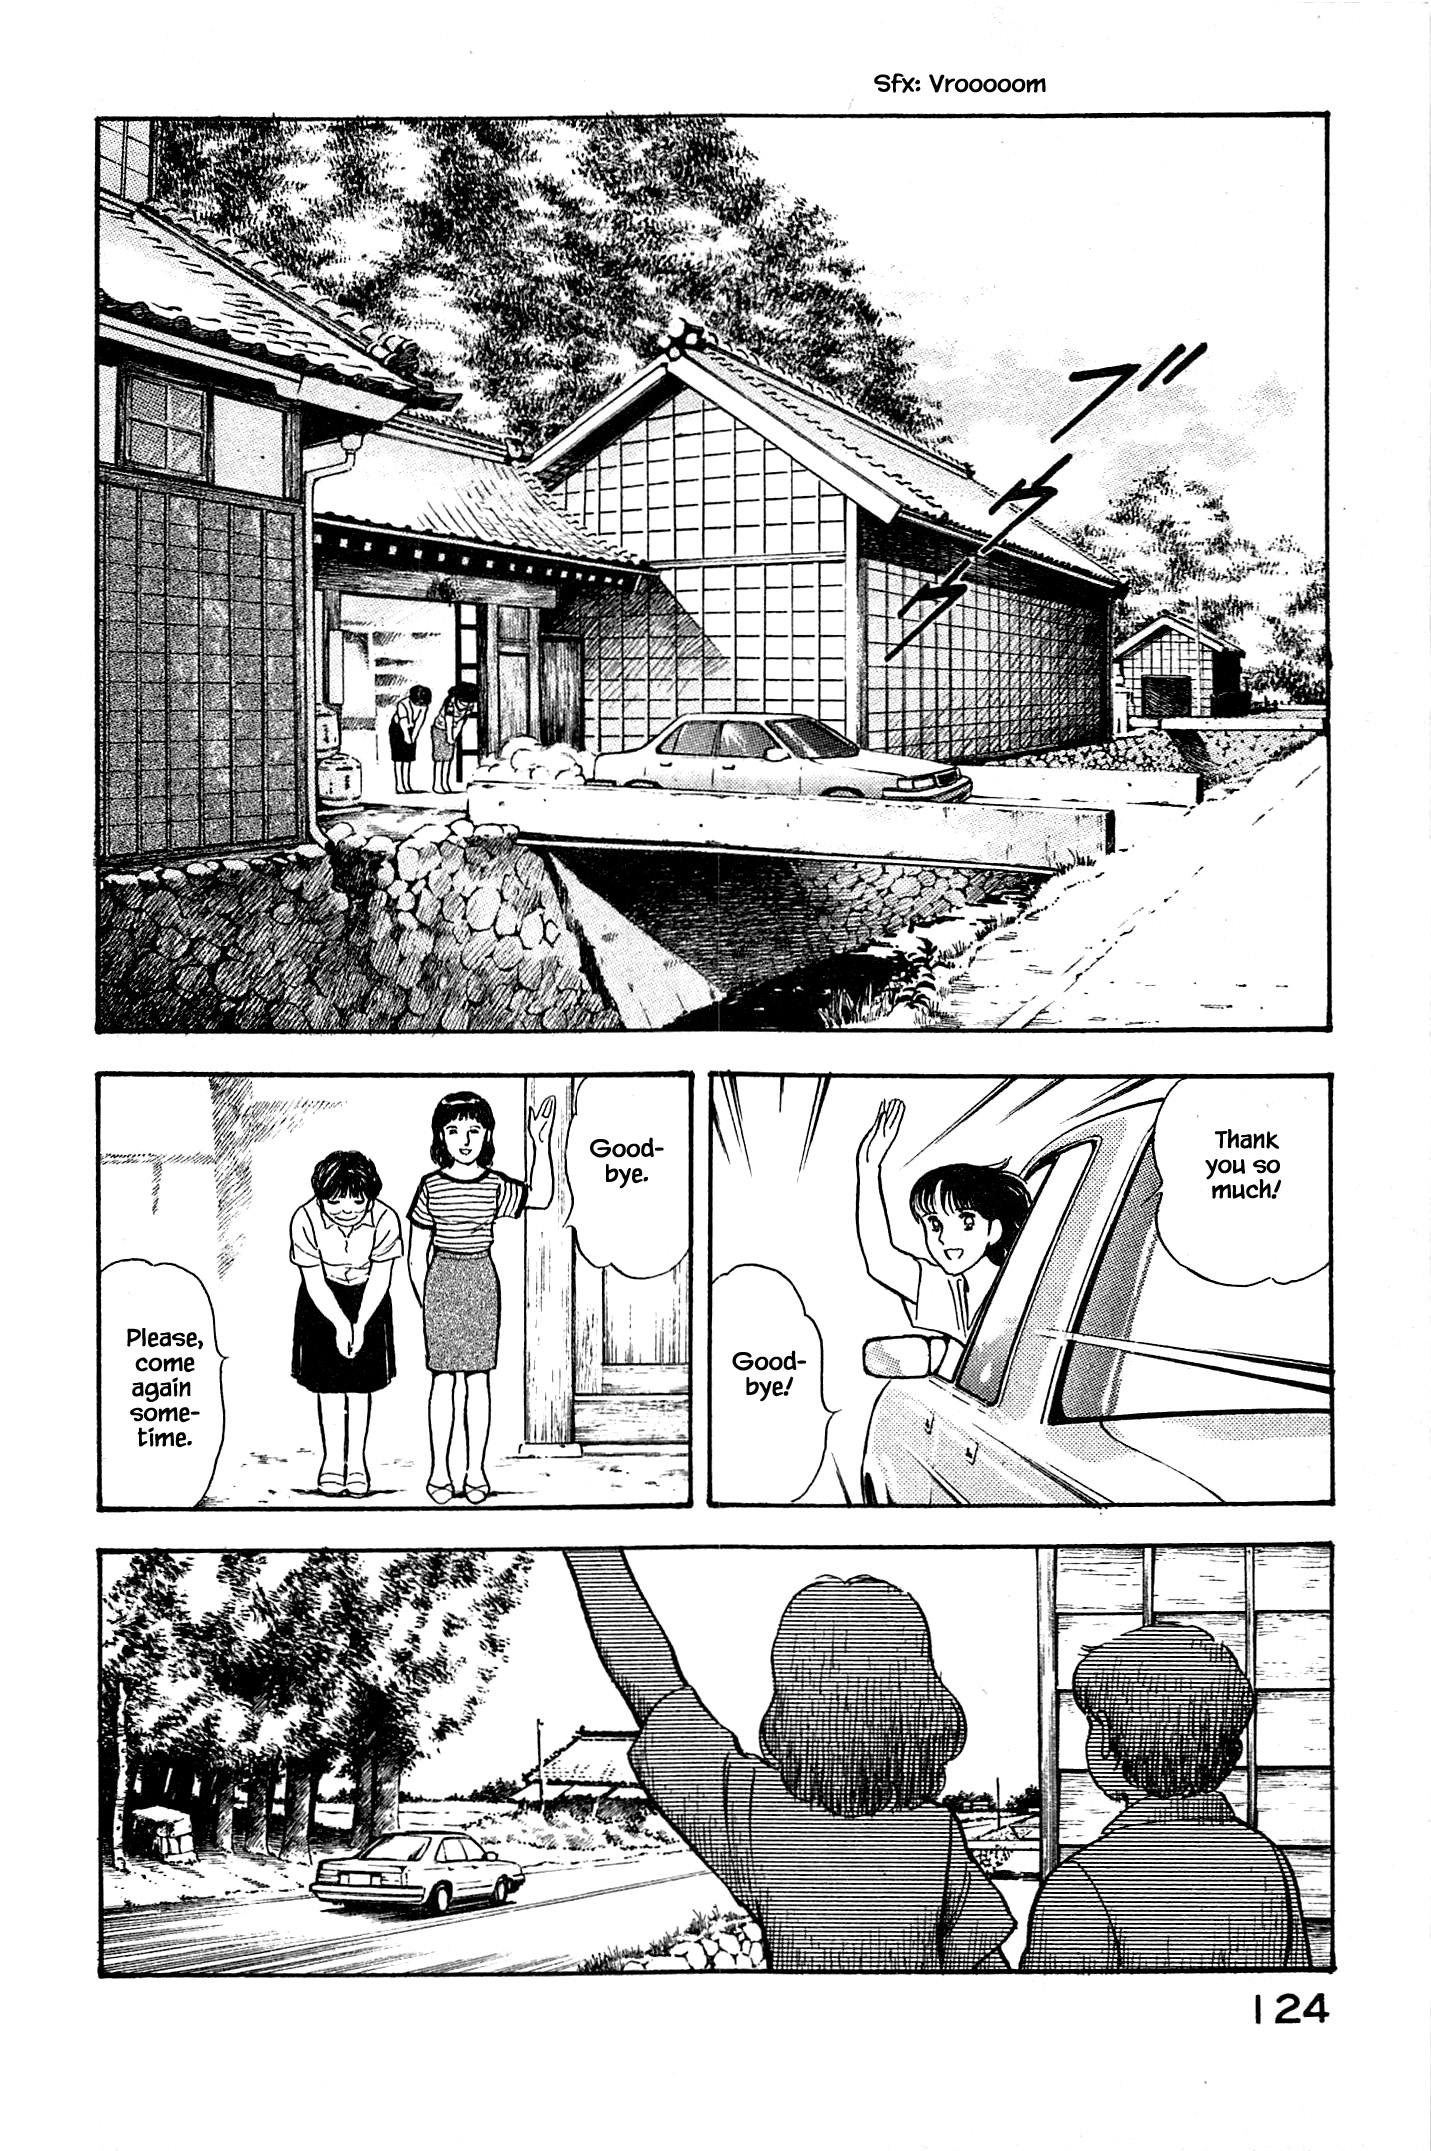 Natsuko's Sake - chapter 94 - #2